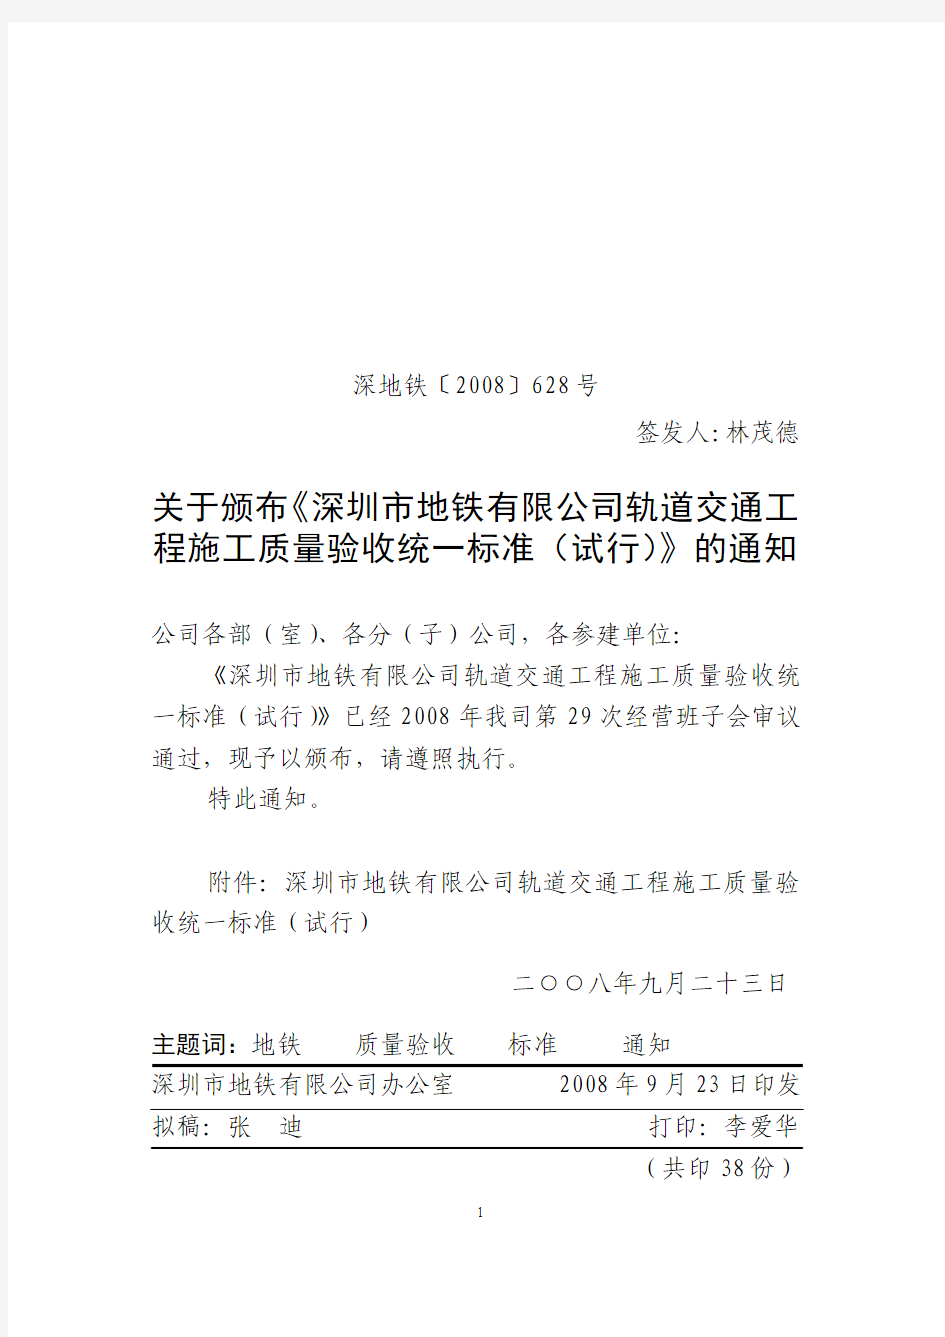 关于颁布《深圳市地铁有限公司轨道交通工程施工质量验收统一标准(试行)》的通知  深地铁[2008]628号